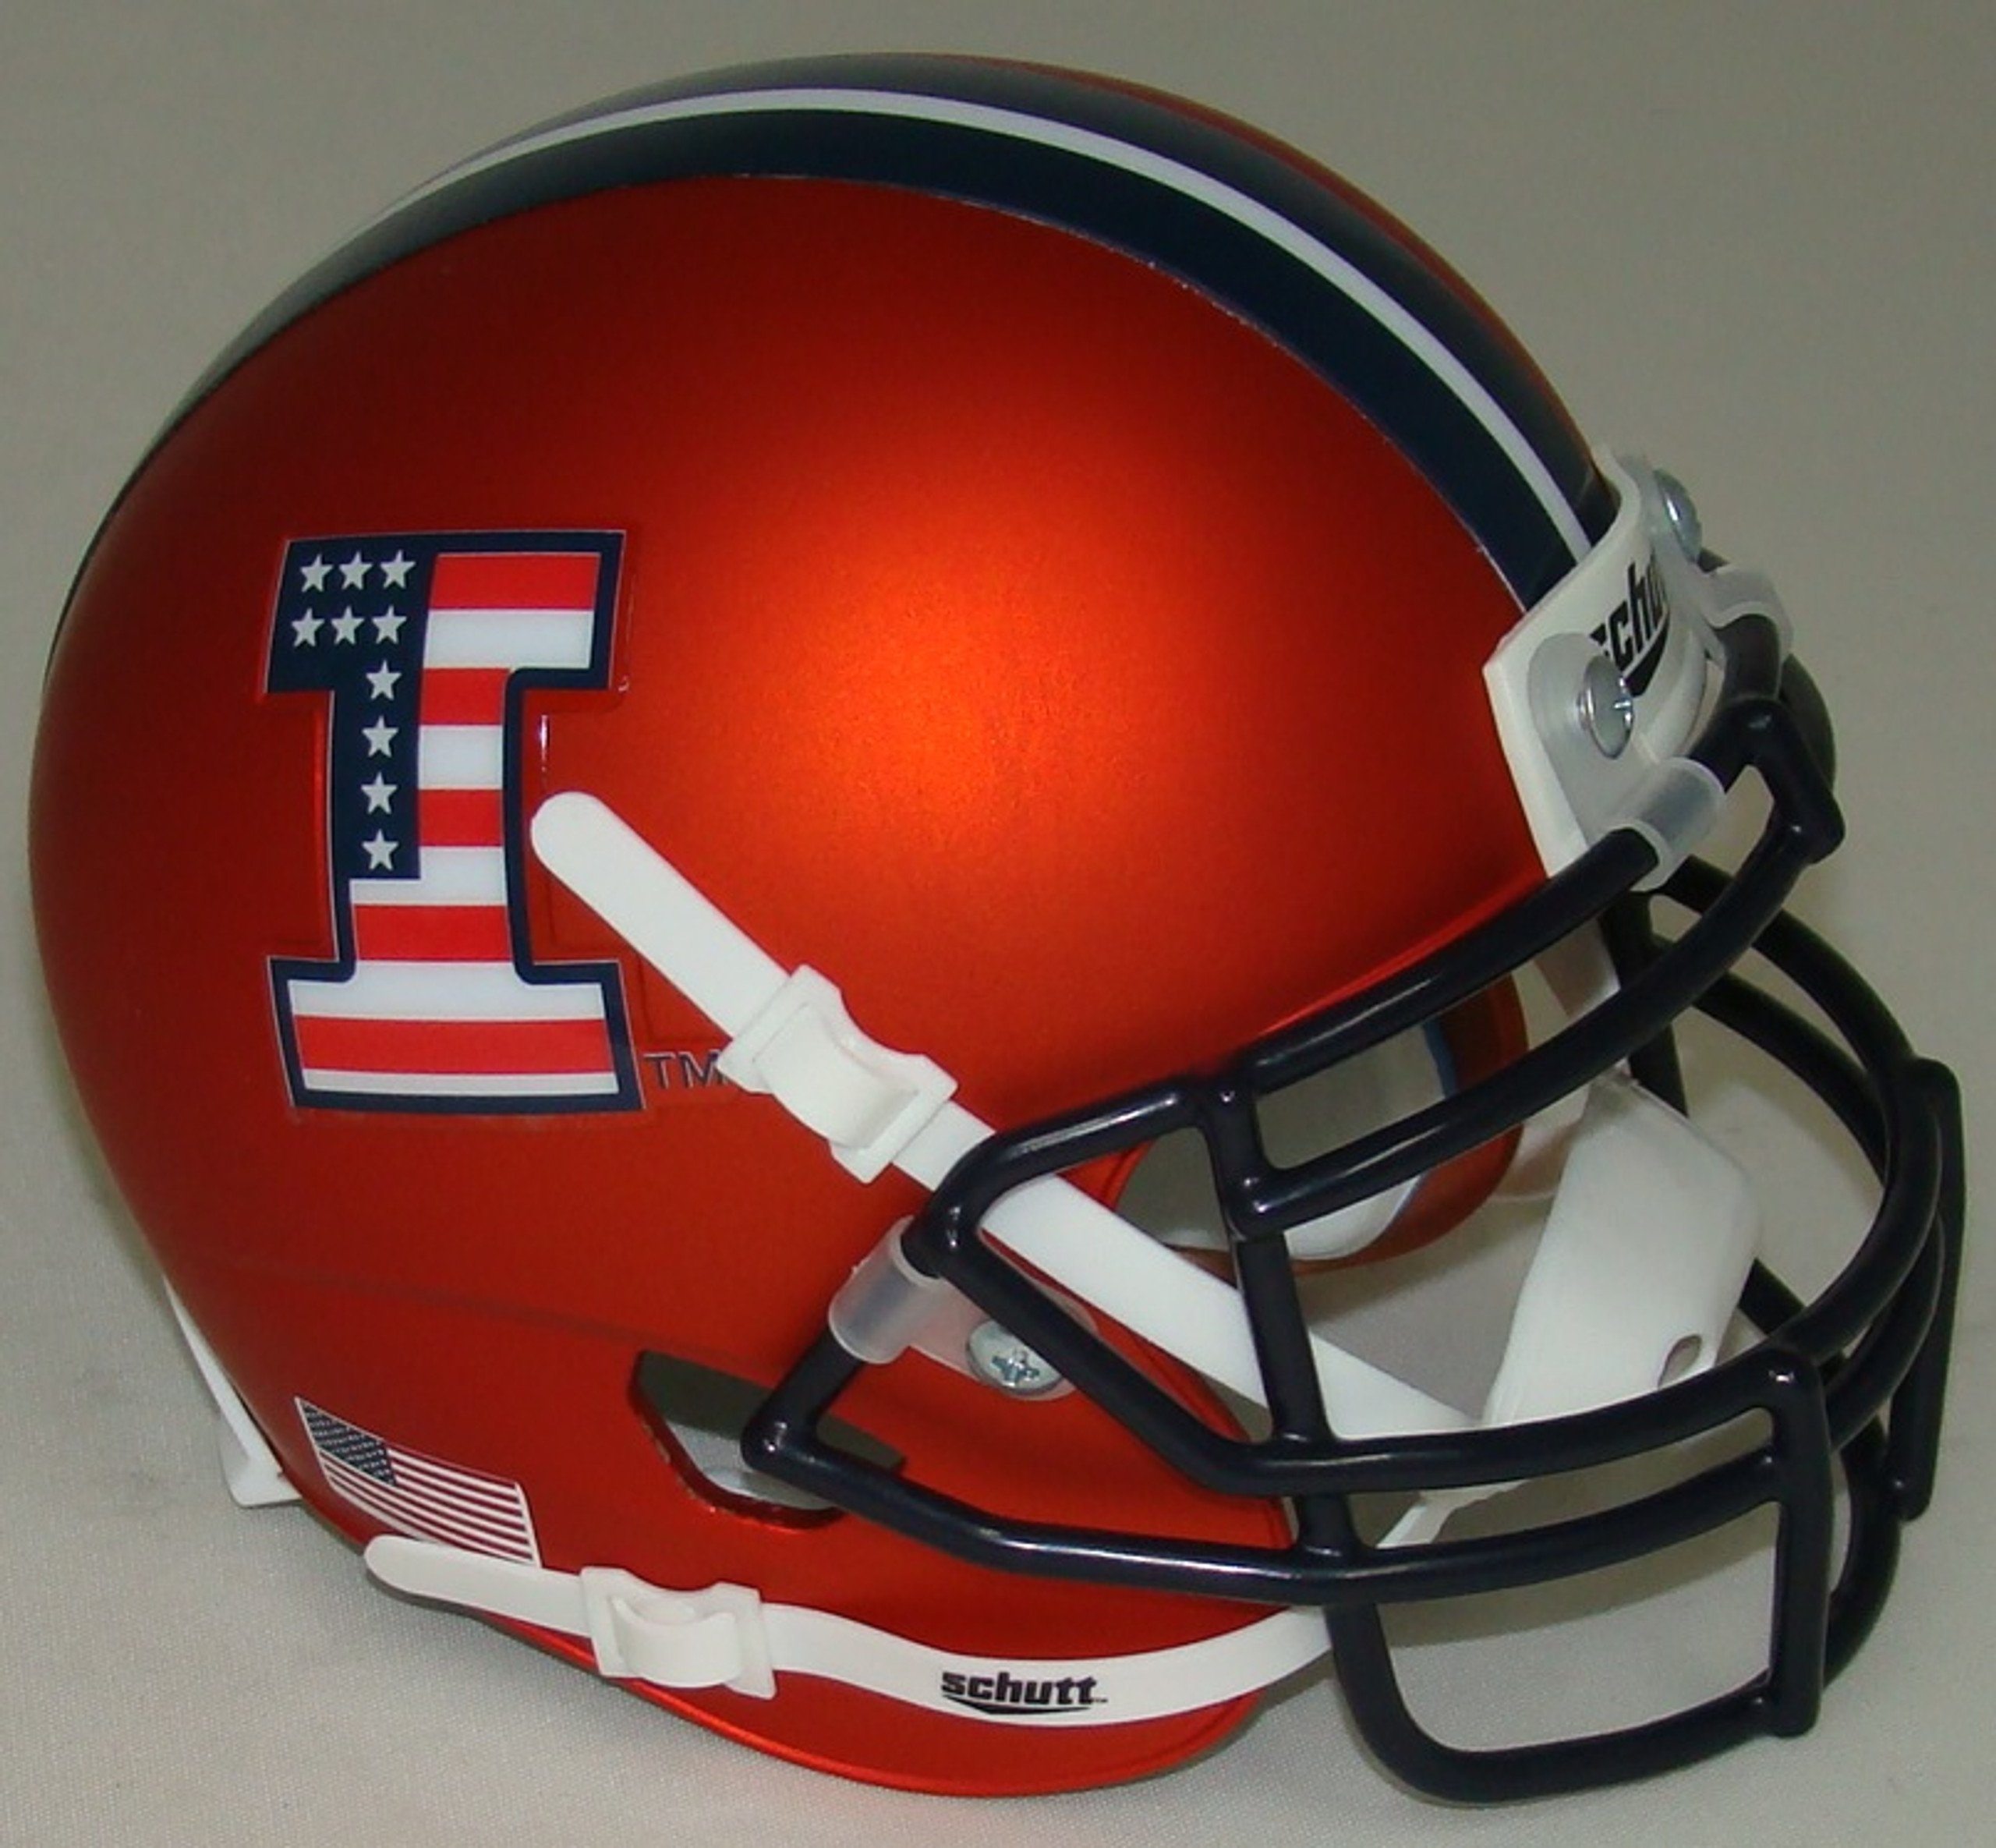 Illinois Fighting Illini New 2020 Ncaa Riddell Speed Mini Football Helmet